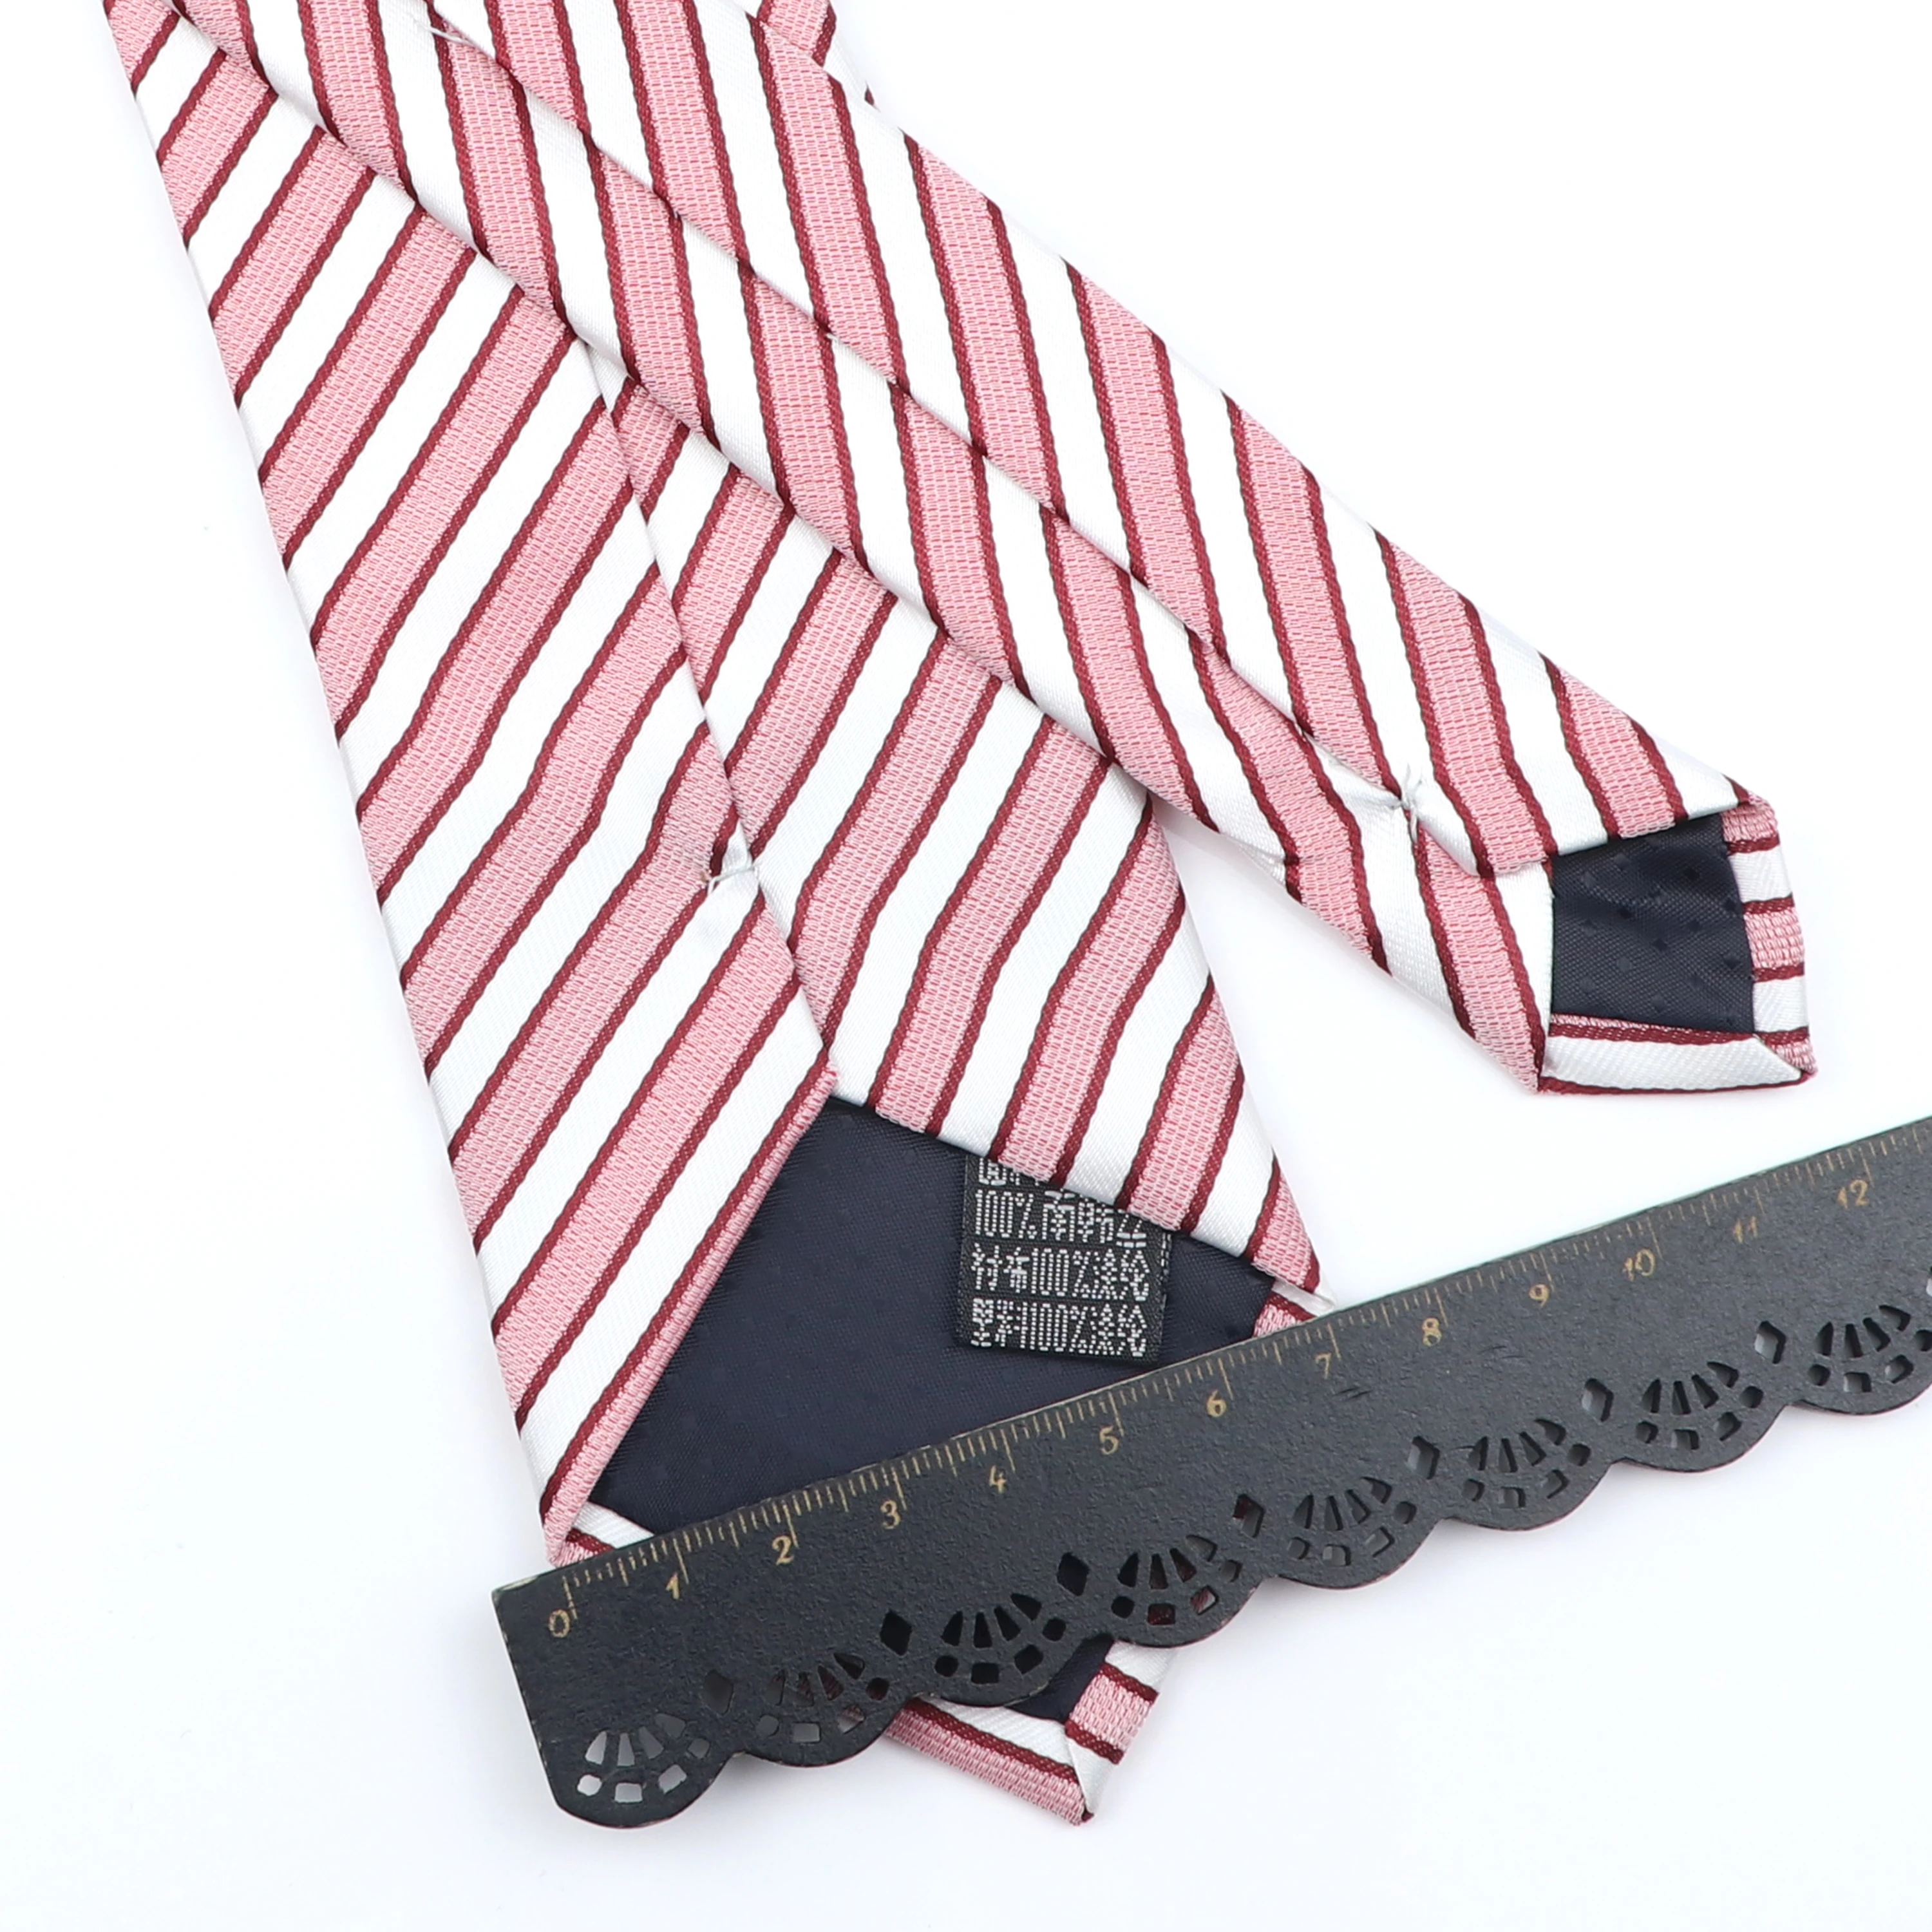 Новый мужской галстук в горошек полоску Модный классический мягкий синий черный